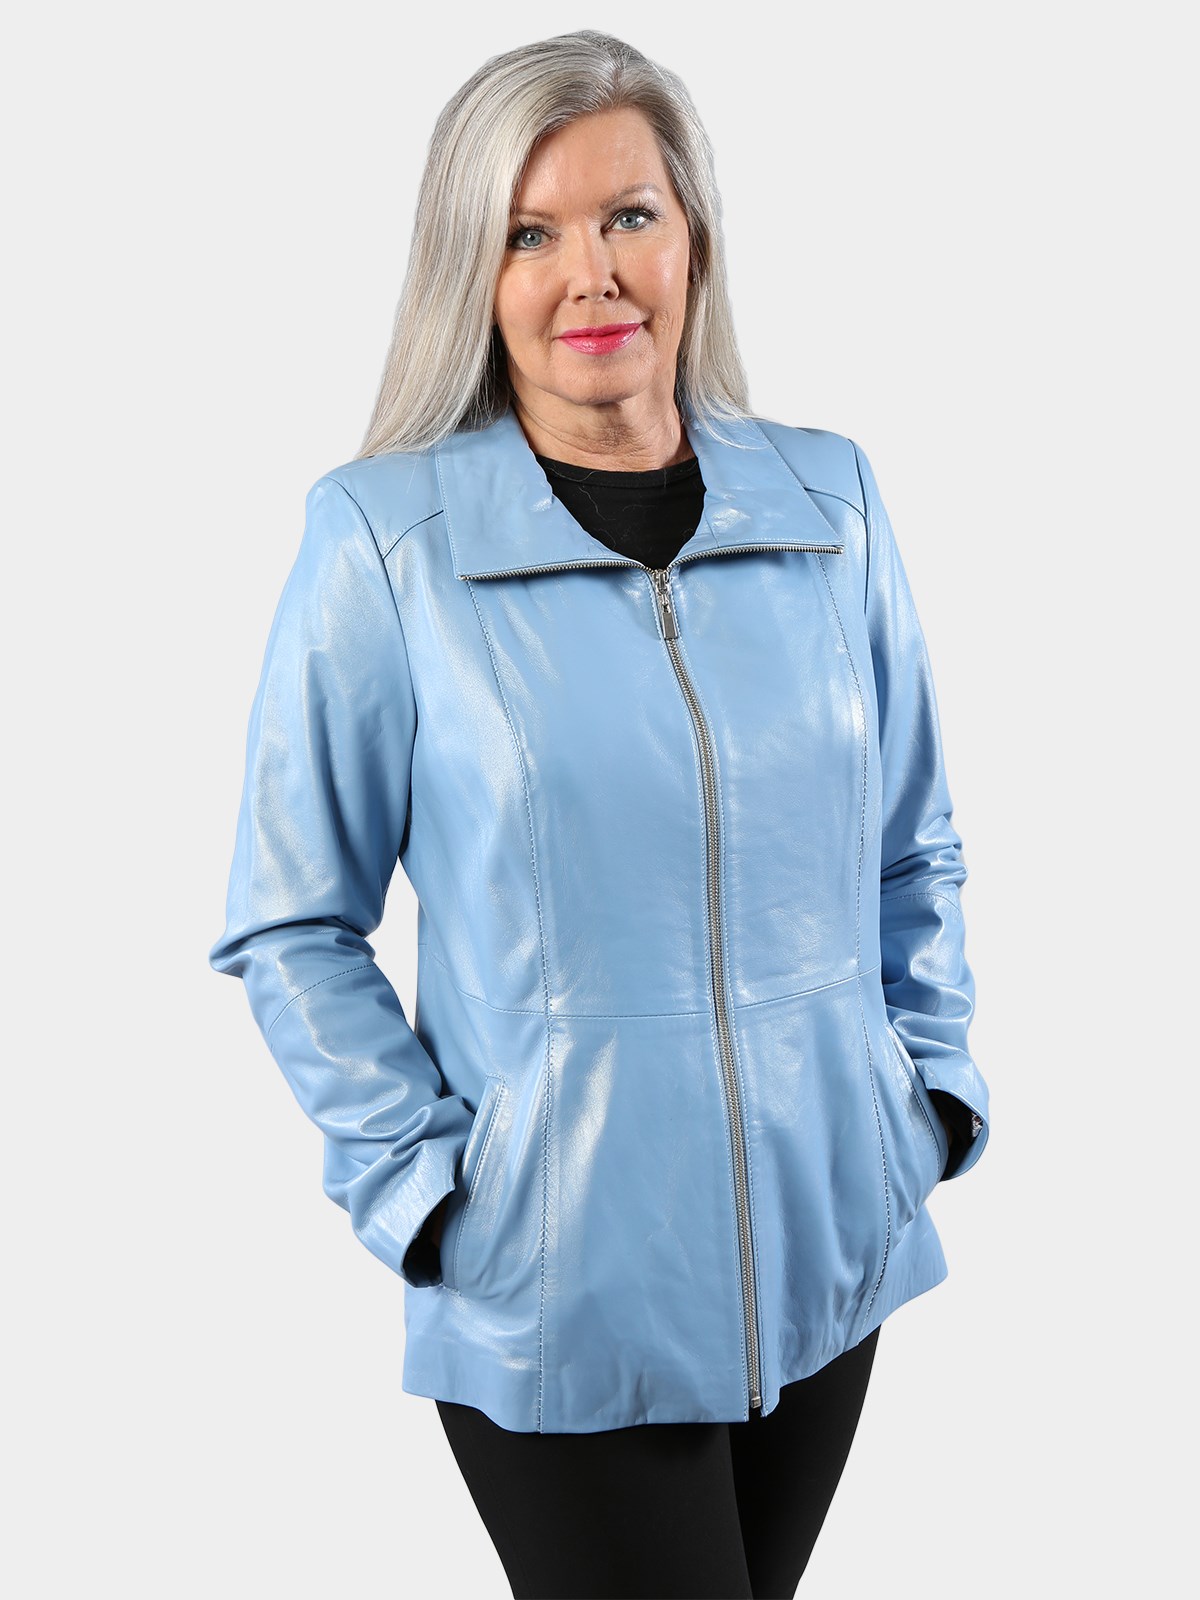 Woman's Sky Blue Lambskin Leather Jacket